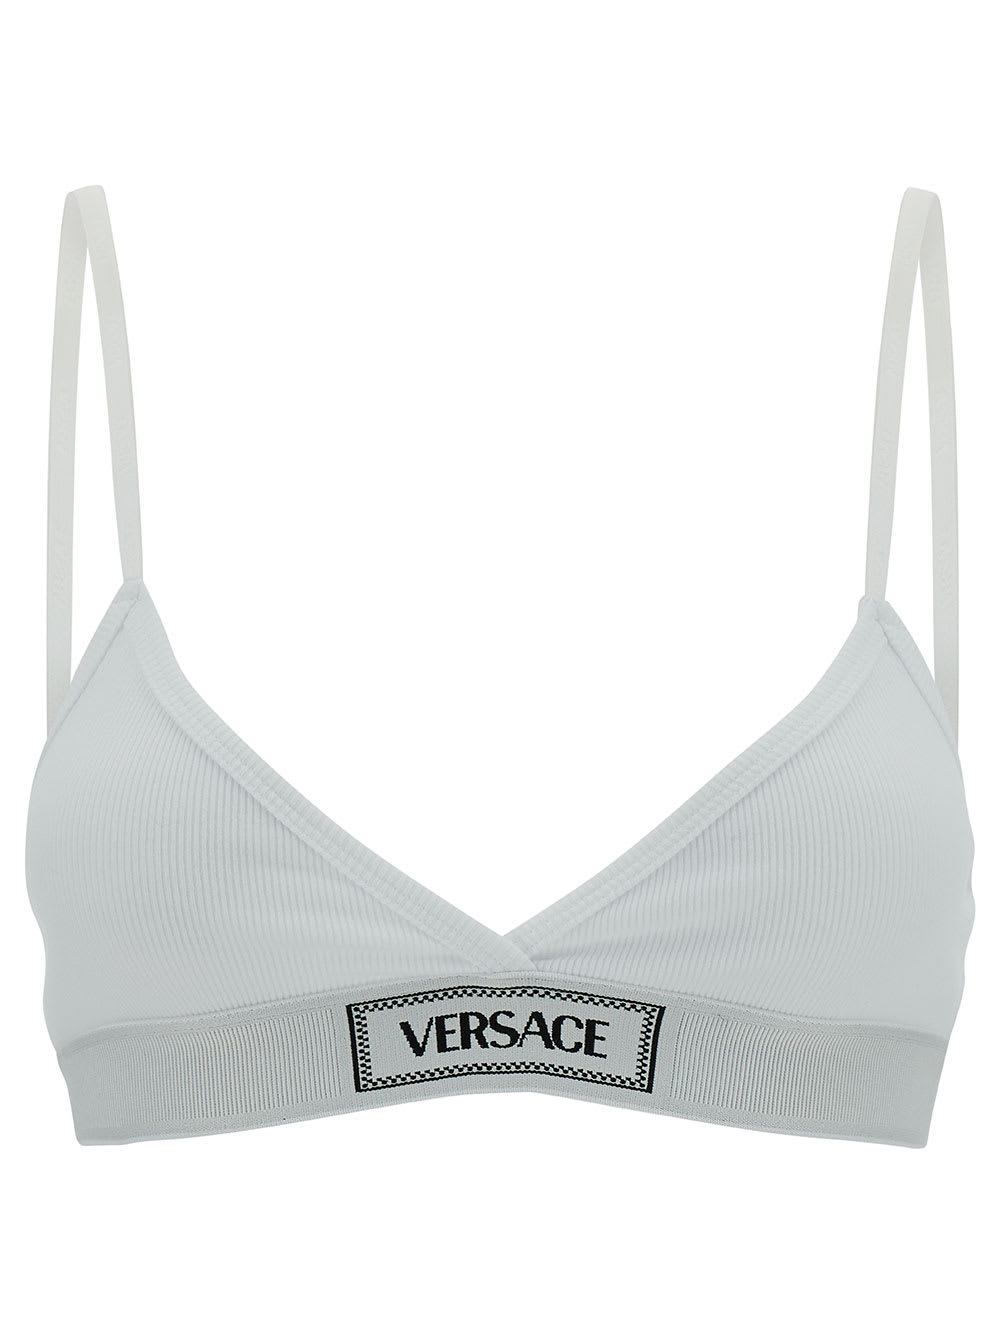 Versace Underwear Cotton Top In White